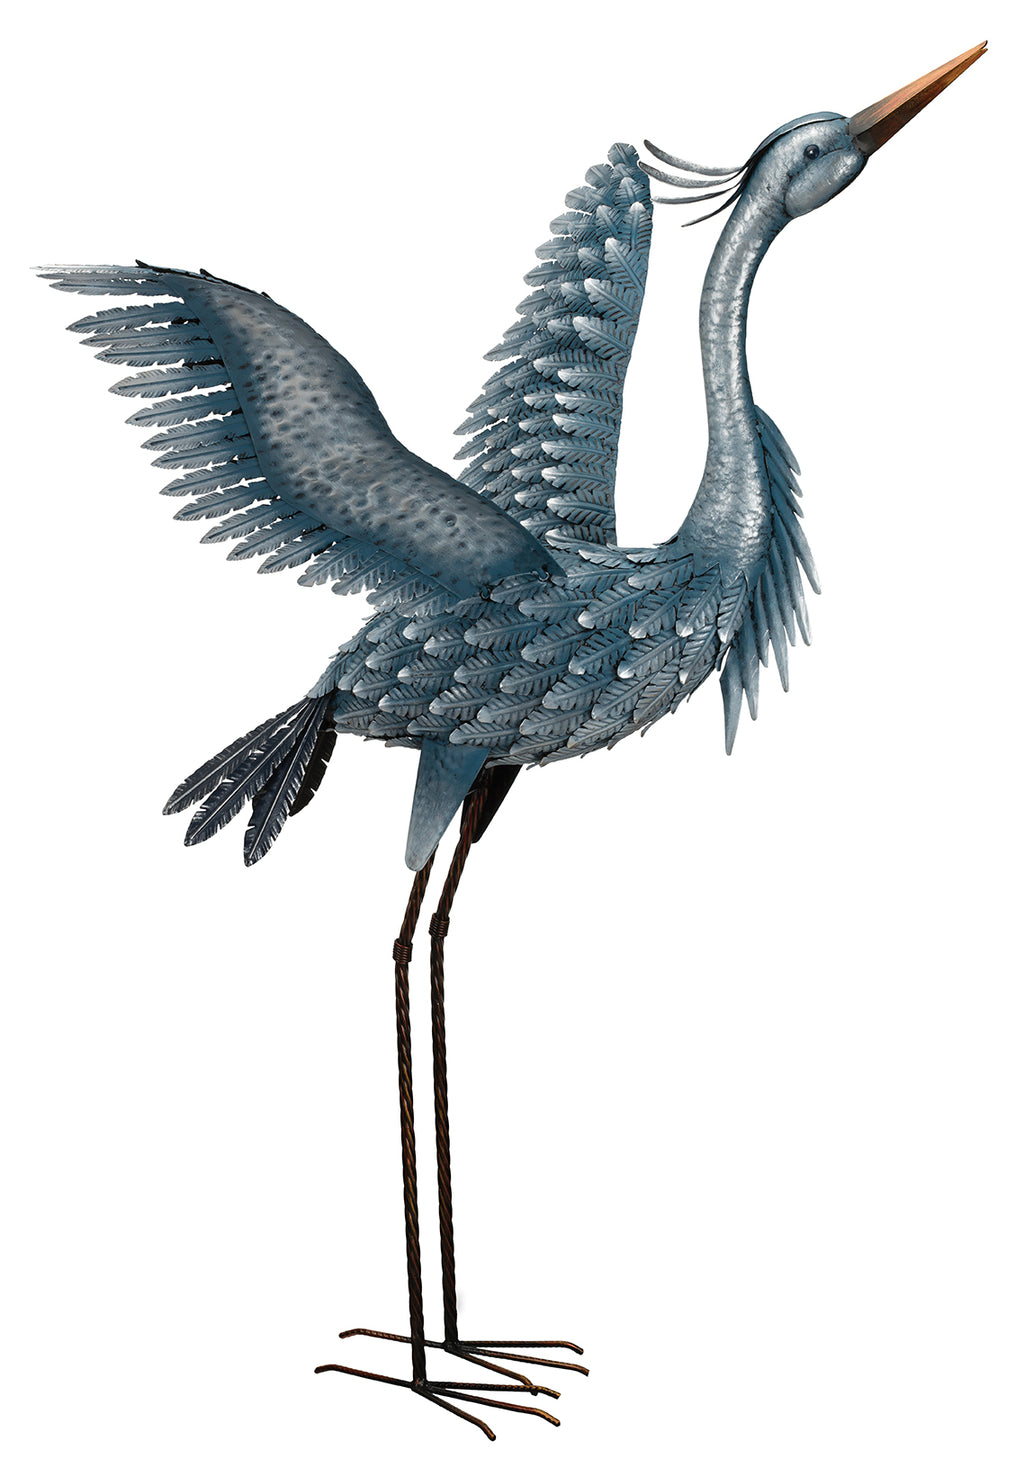 Metallic Blue Heron Wings Up